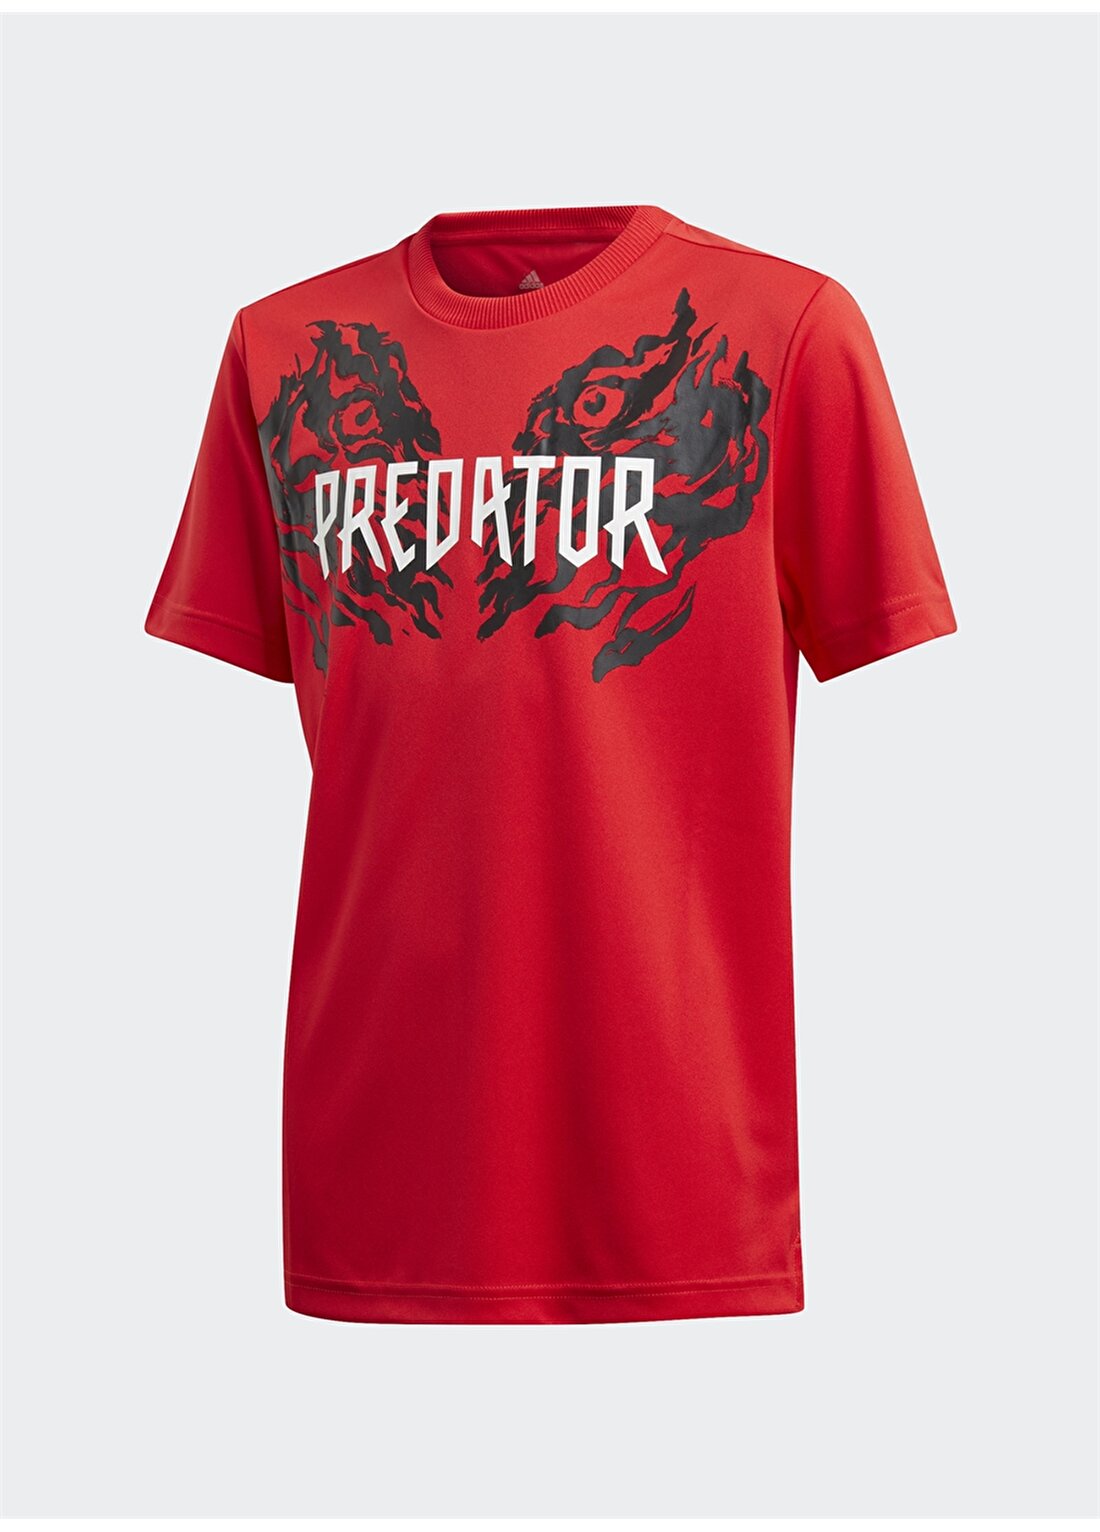 Adidas FL2754 JB Predator Tee Erkek Çocuk T-Shirt